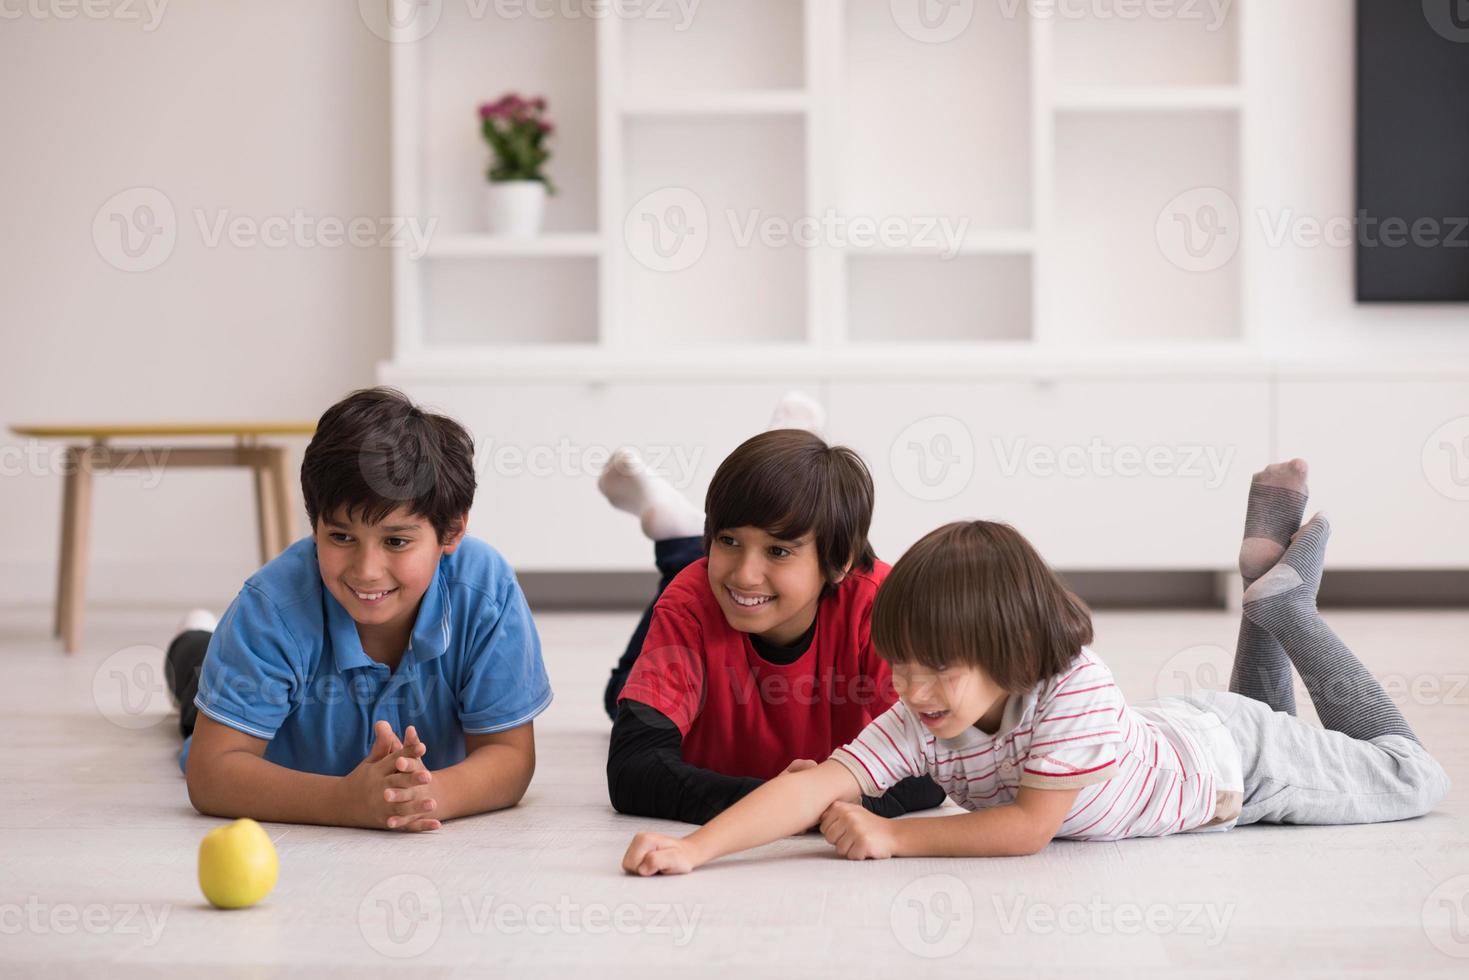 jongens die plezier hebben met een appel op de vloer foto